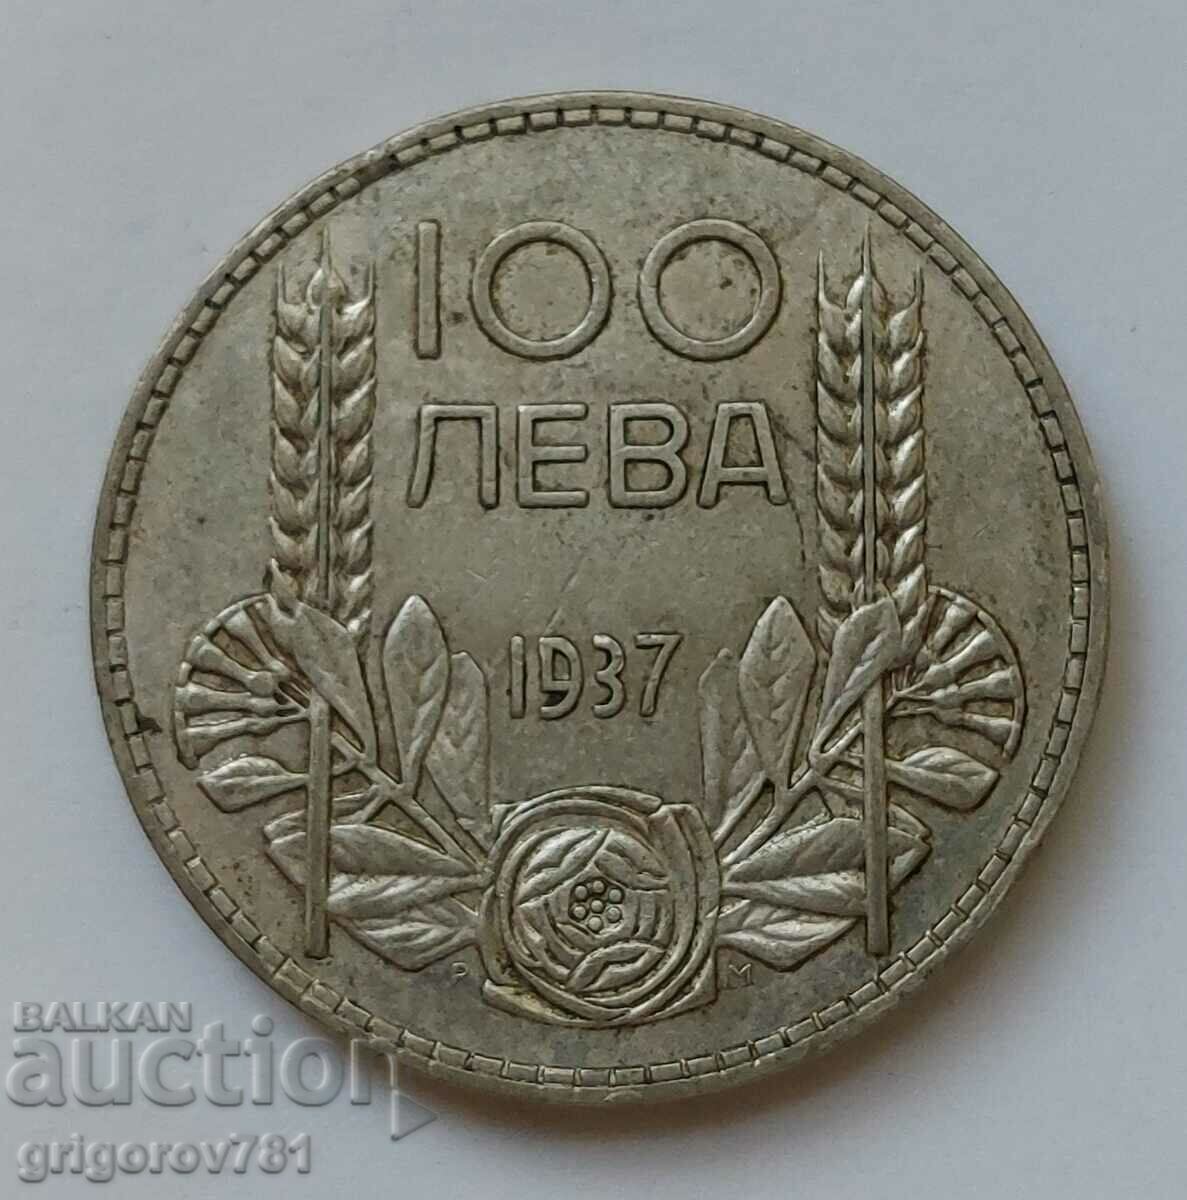 100 leva silver Bulgaria 1937 - silver coin #114